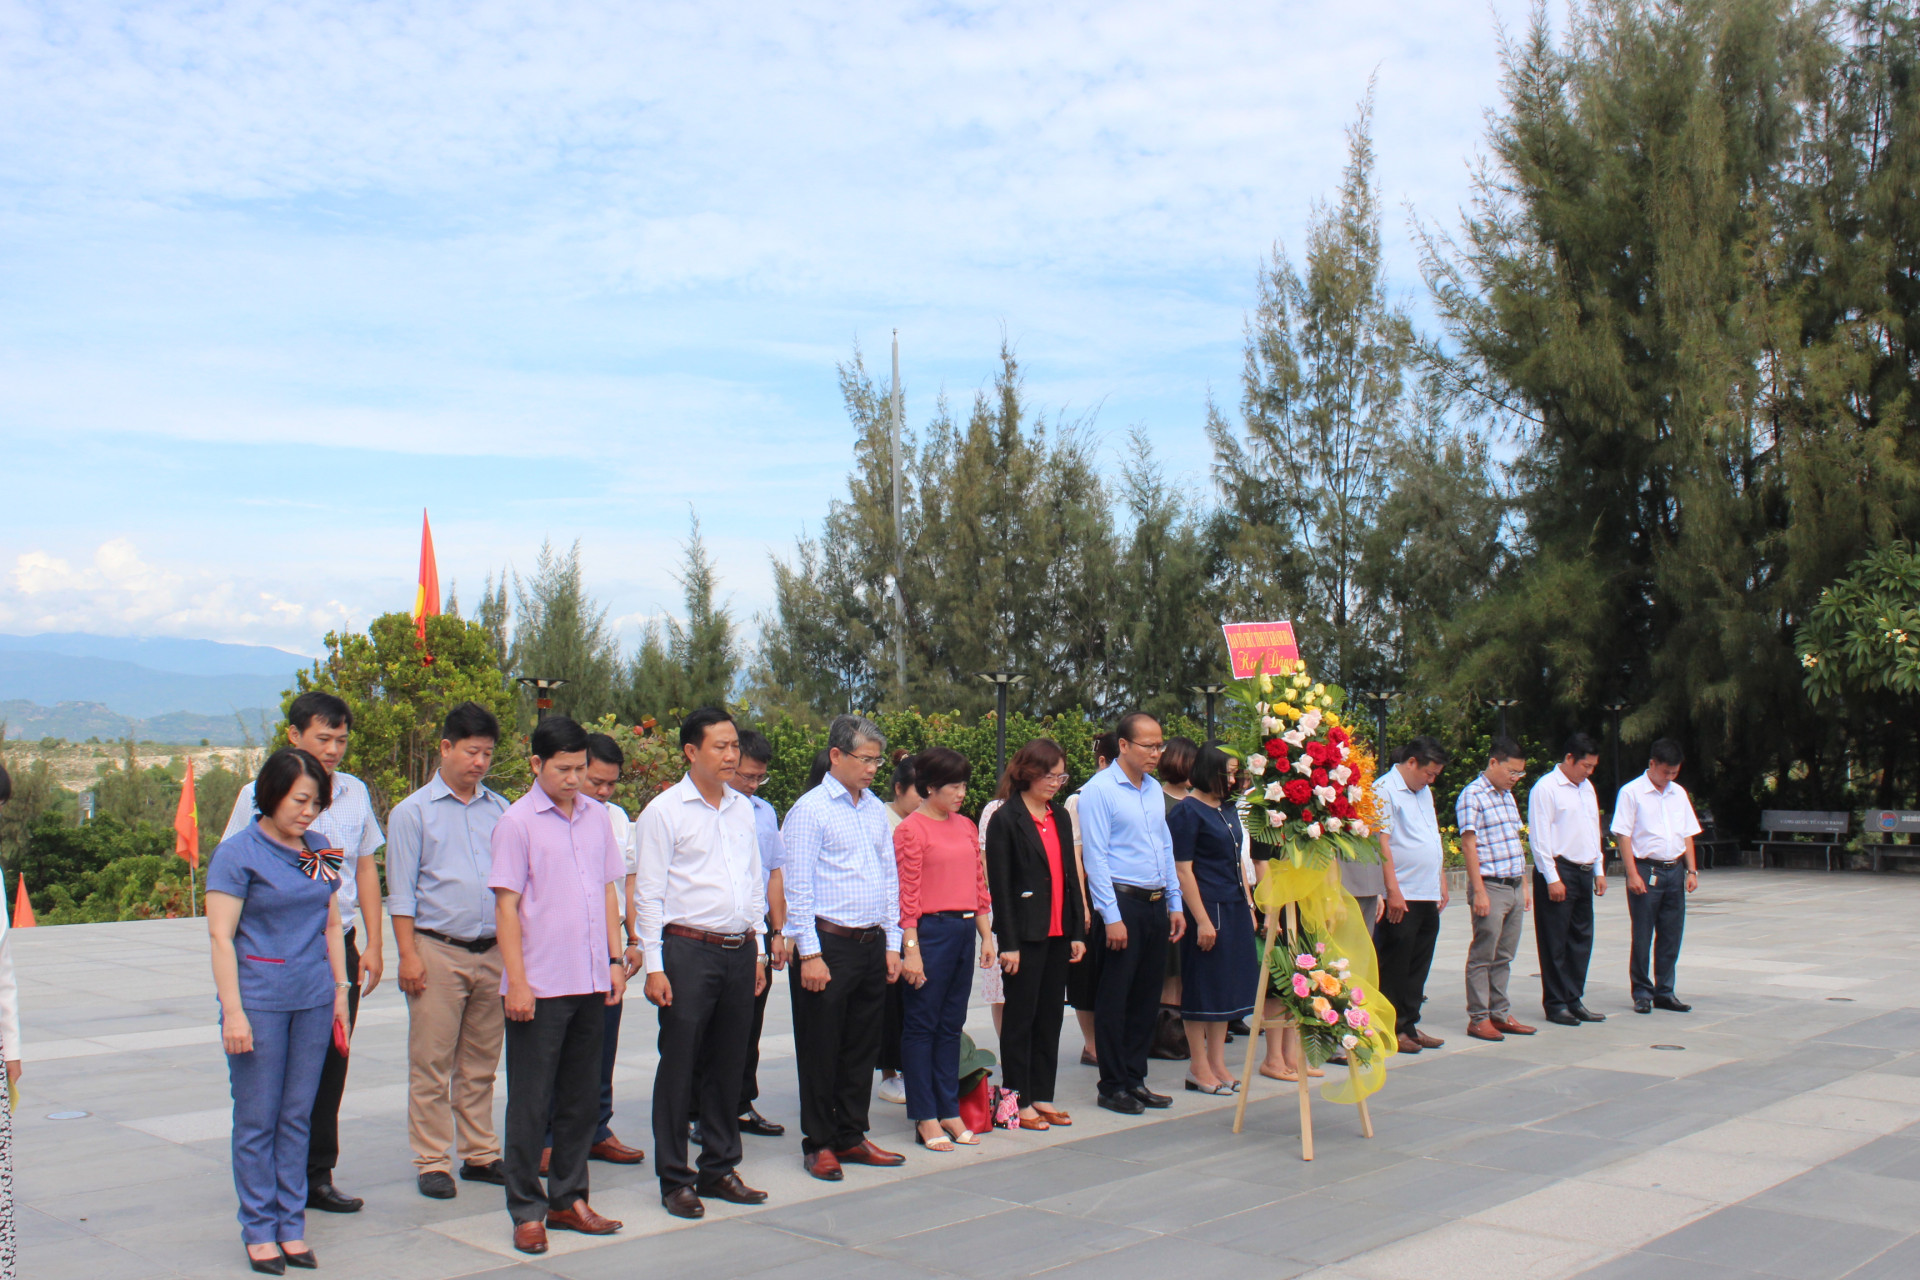 Các đại biểu dâng hoa, dâng hương và dành phút mặc niệm tri ân các anh hùng liệt sĩ.